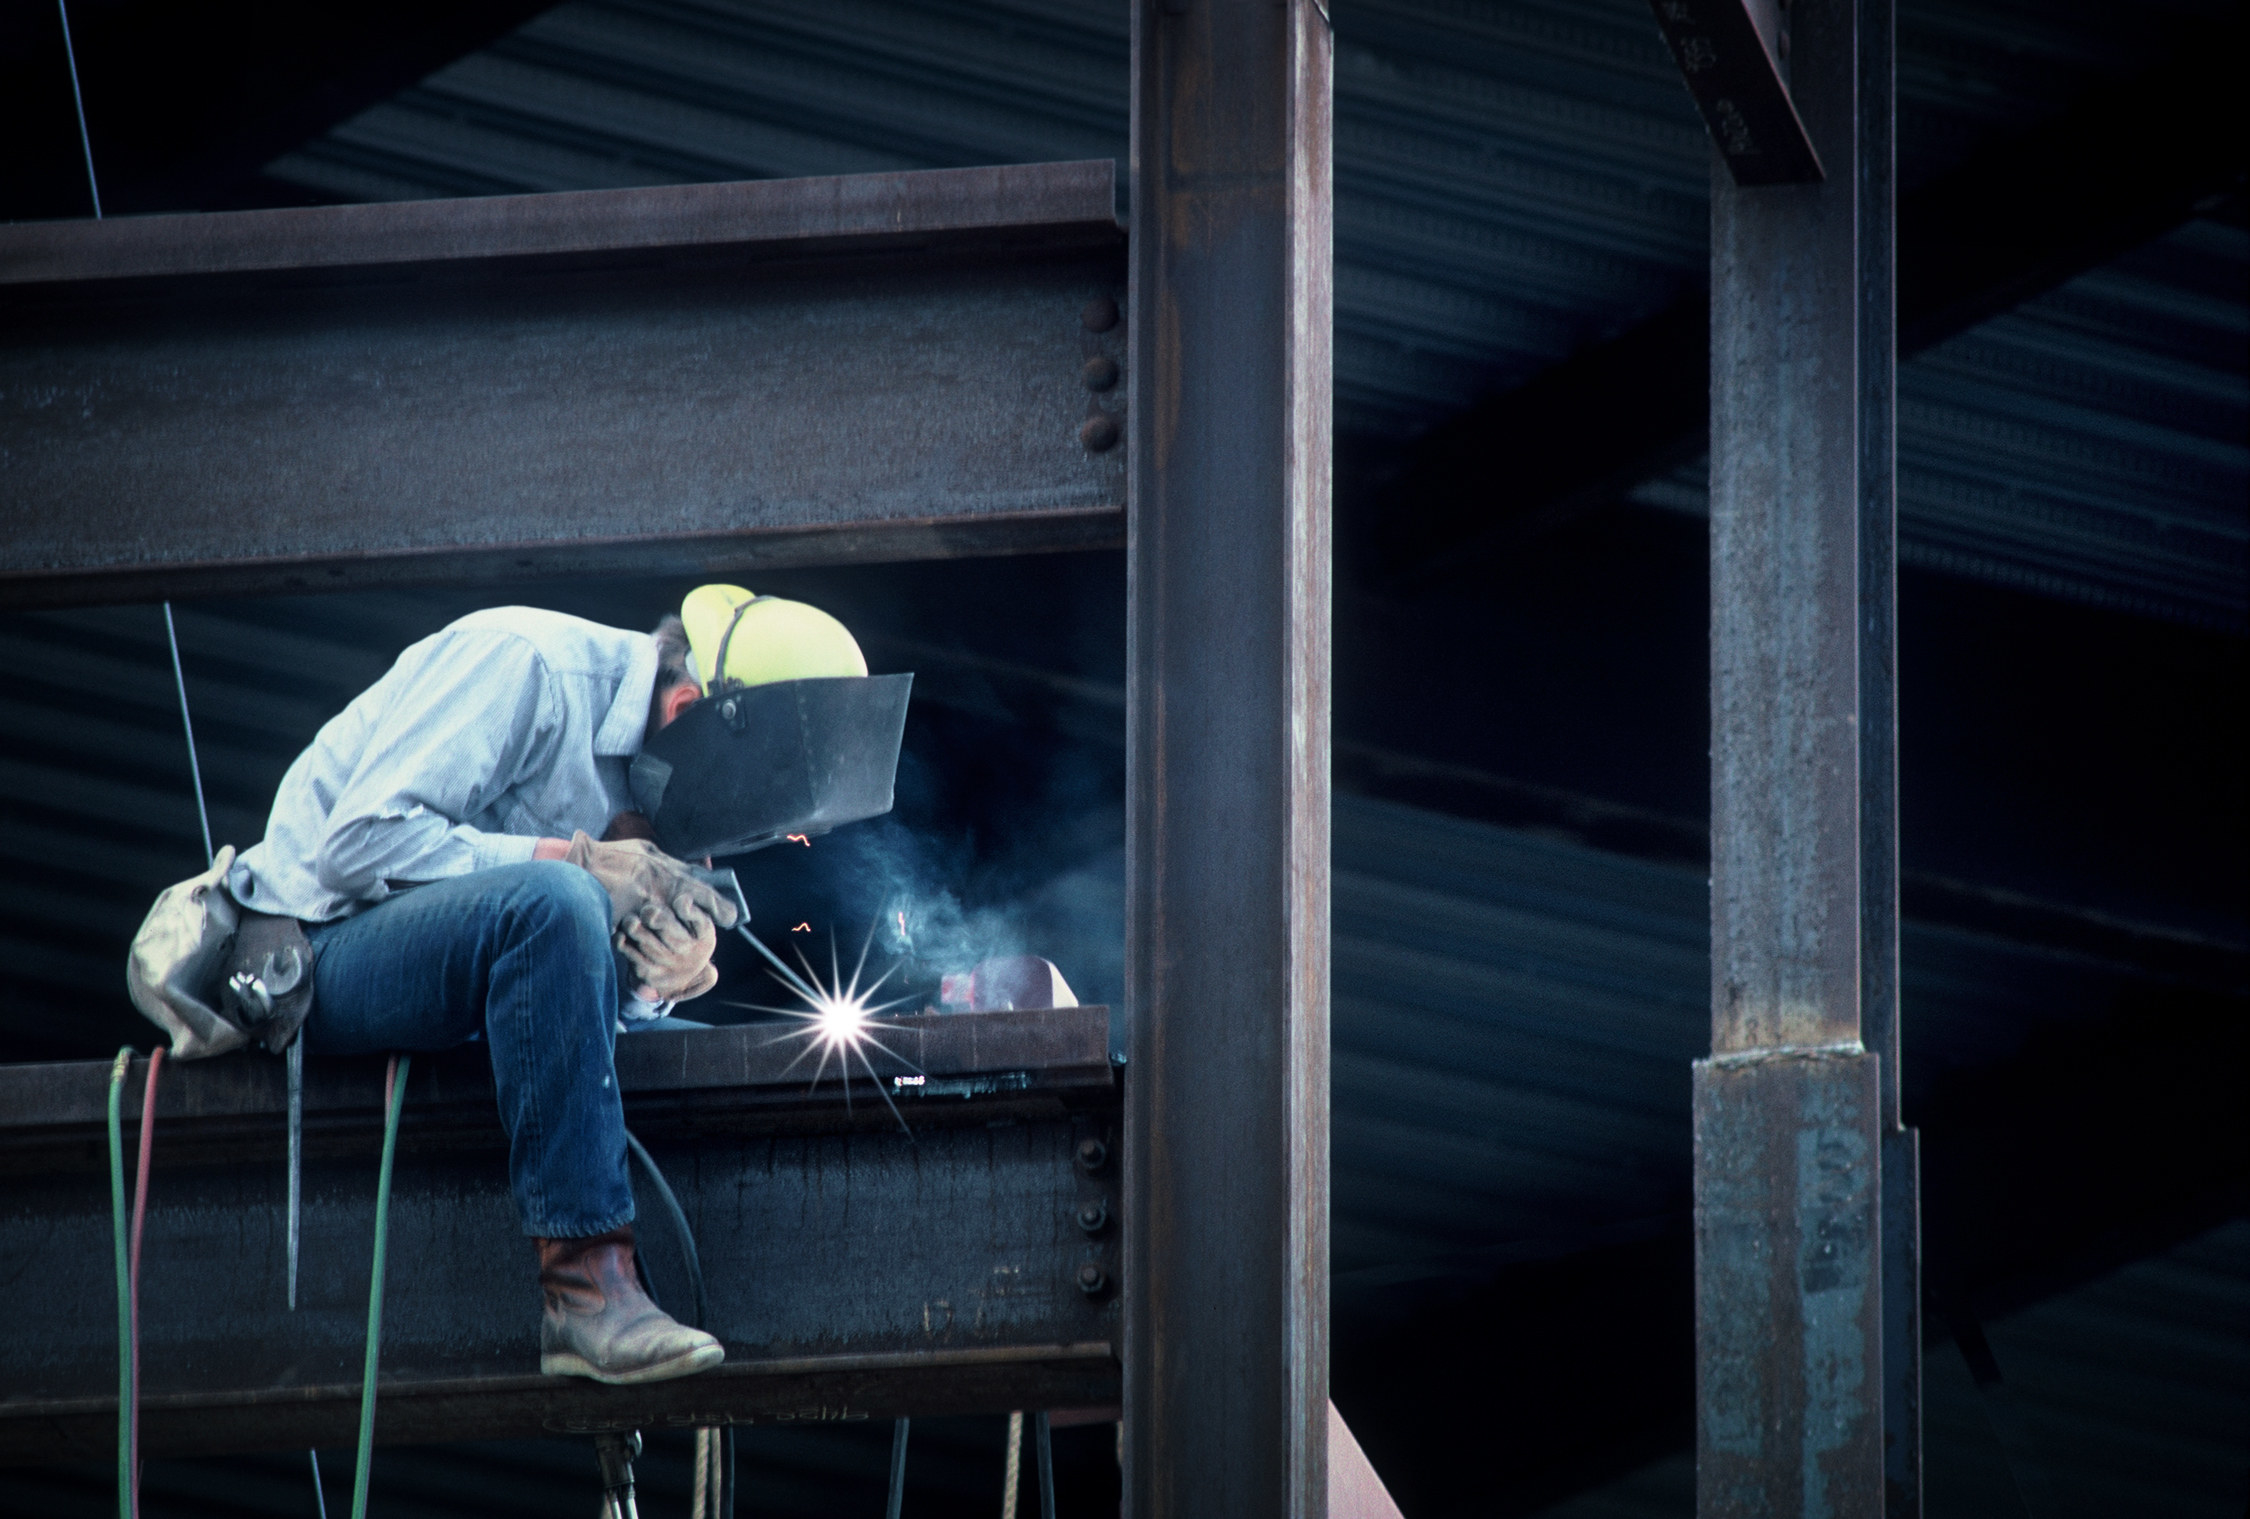 An ironworker welding